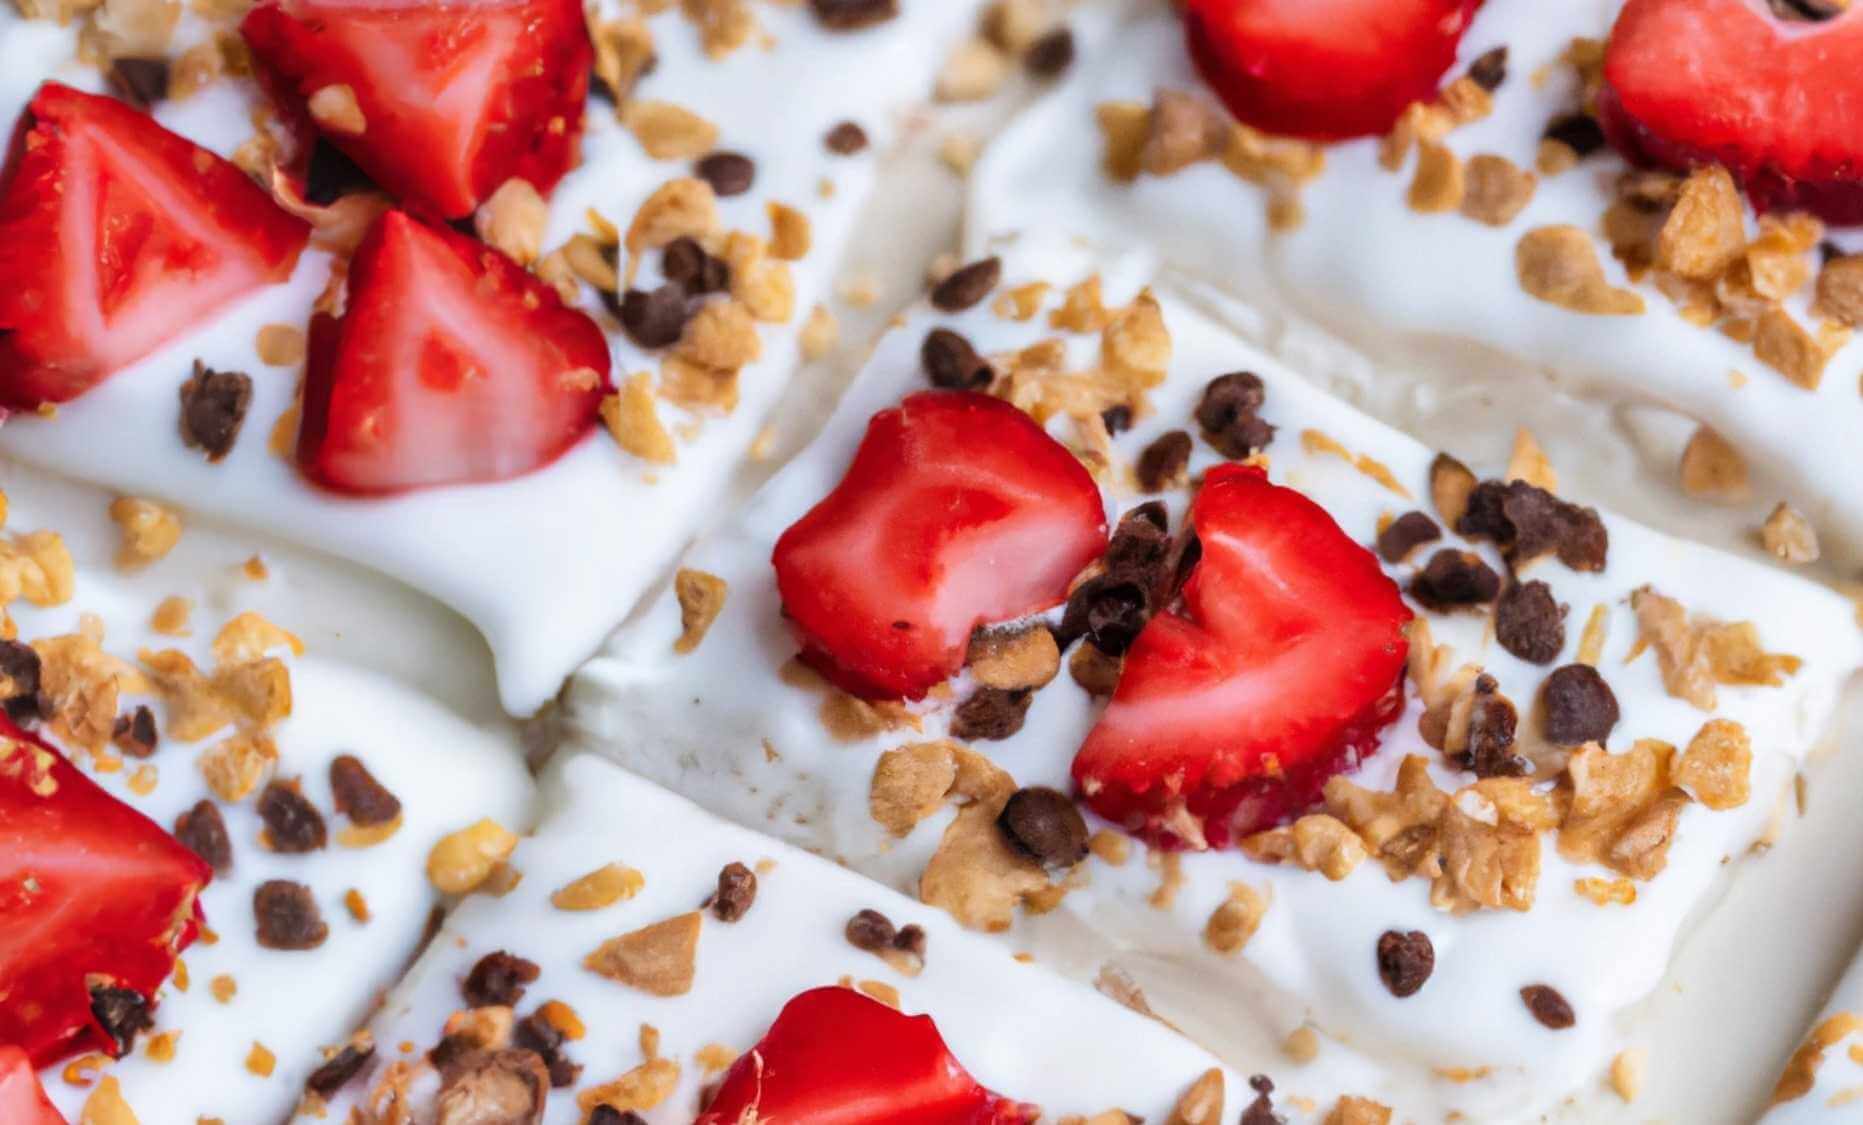 Yogur con fresas heladas y granola: el snack perfecto para combatir el calor